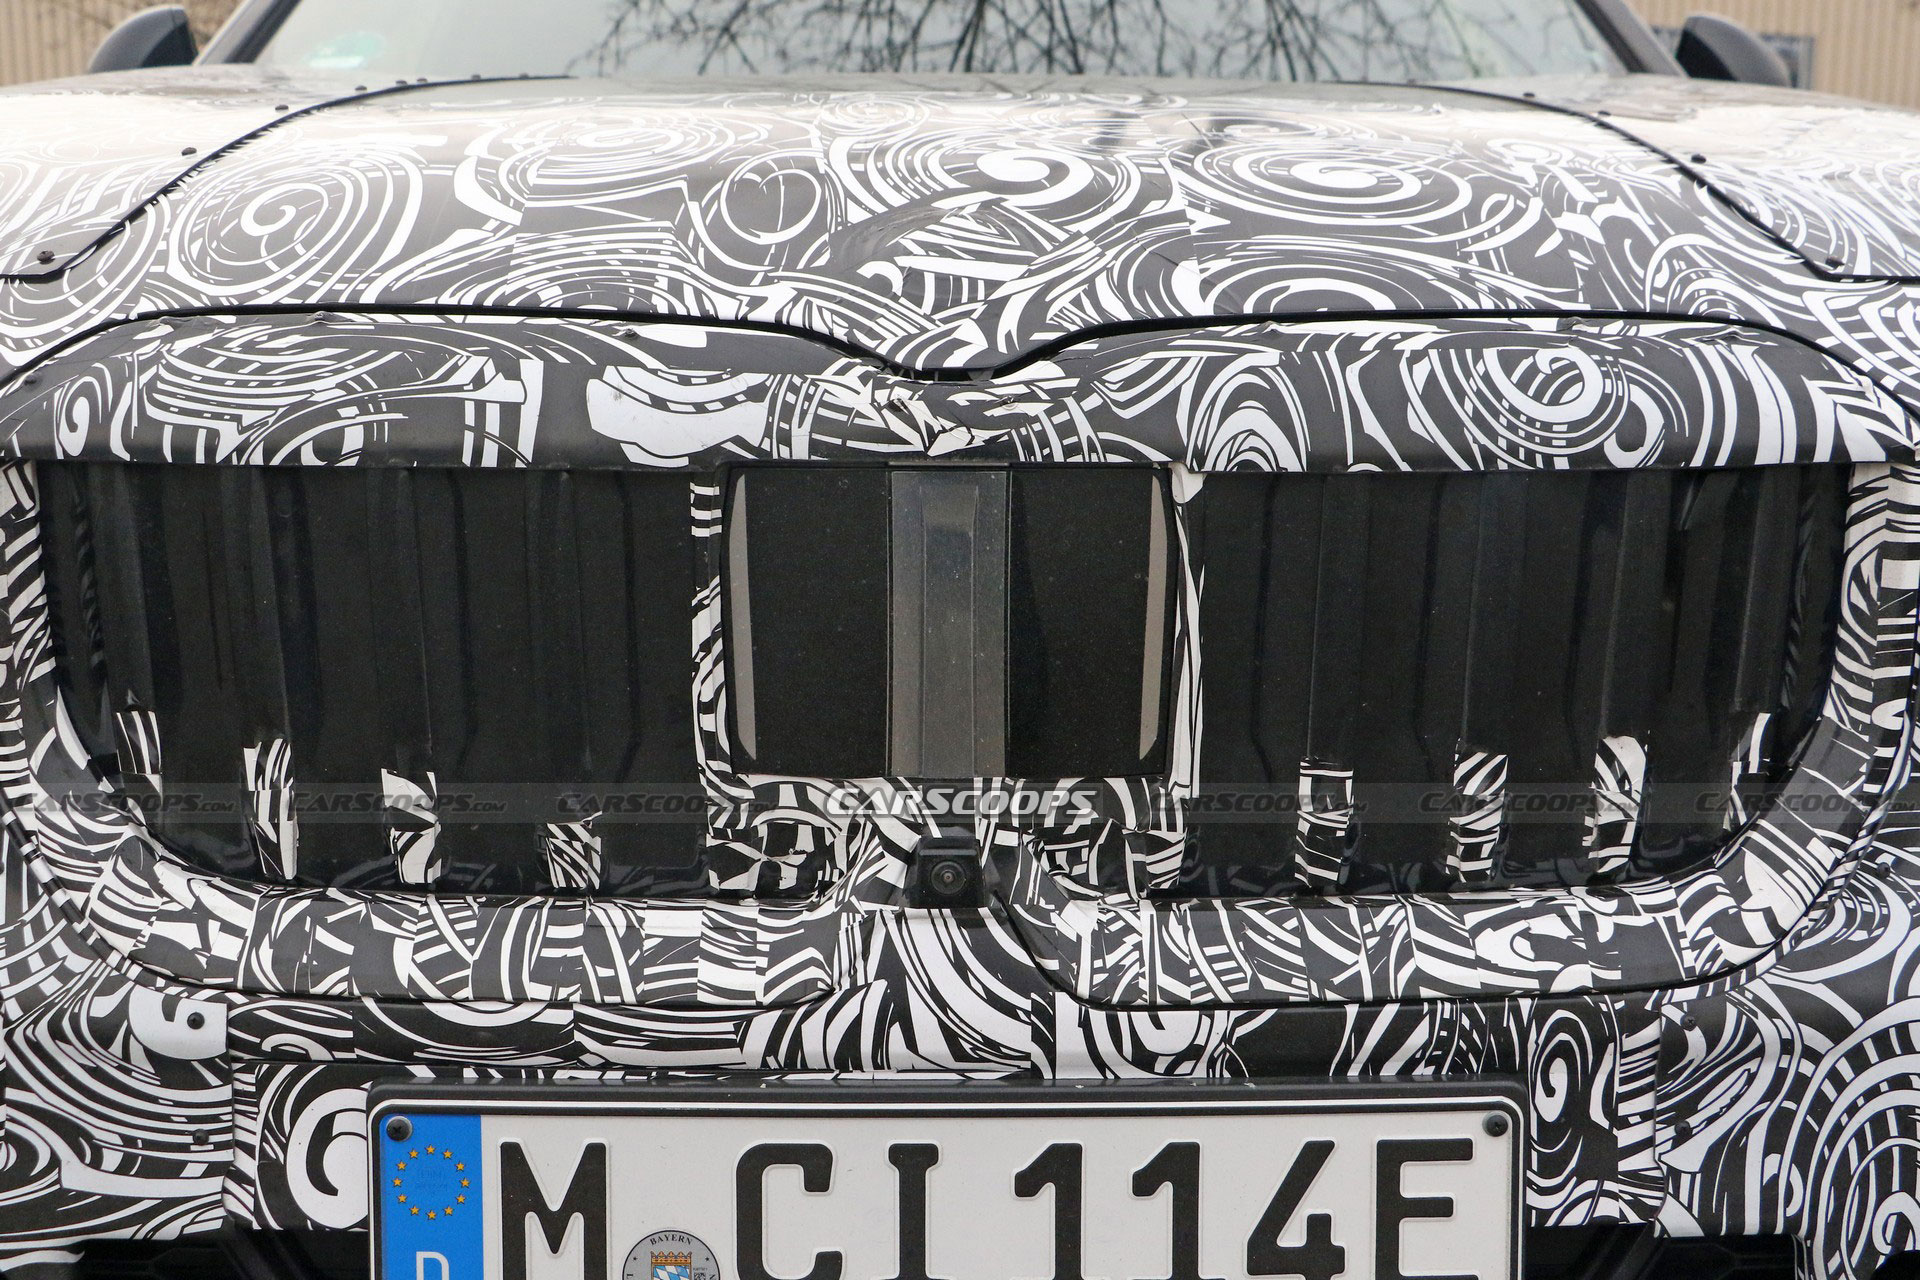 Elektrikli BMW iX1 resim galerisi (21.03.2022)